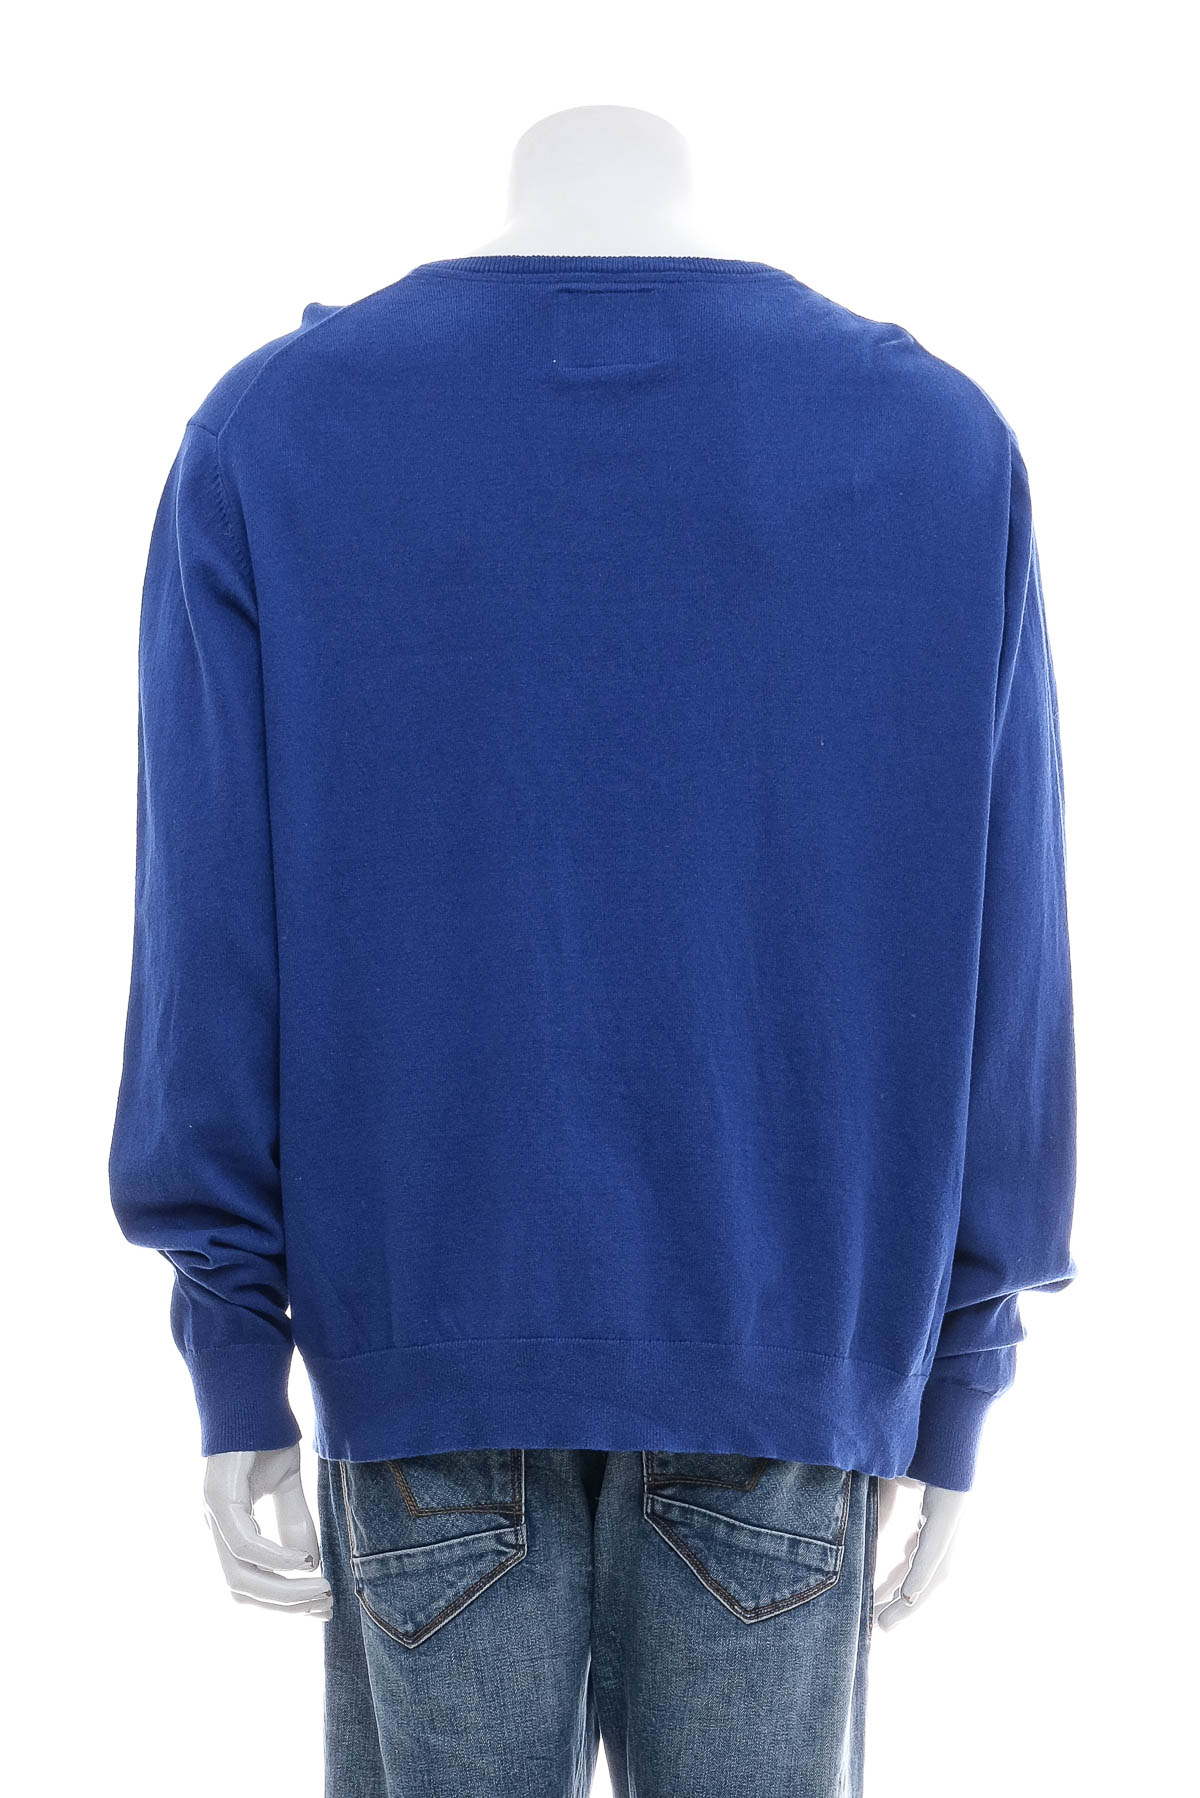 Men's sweater - ST JOHN`S BAY - 1